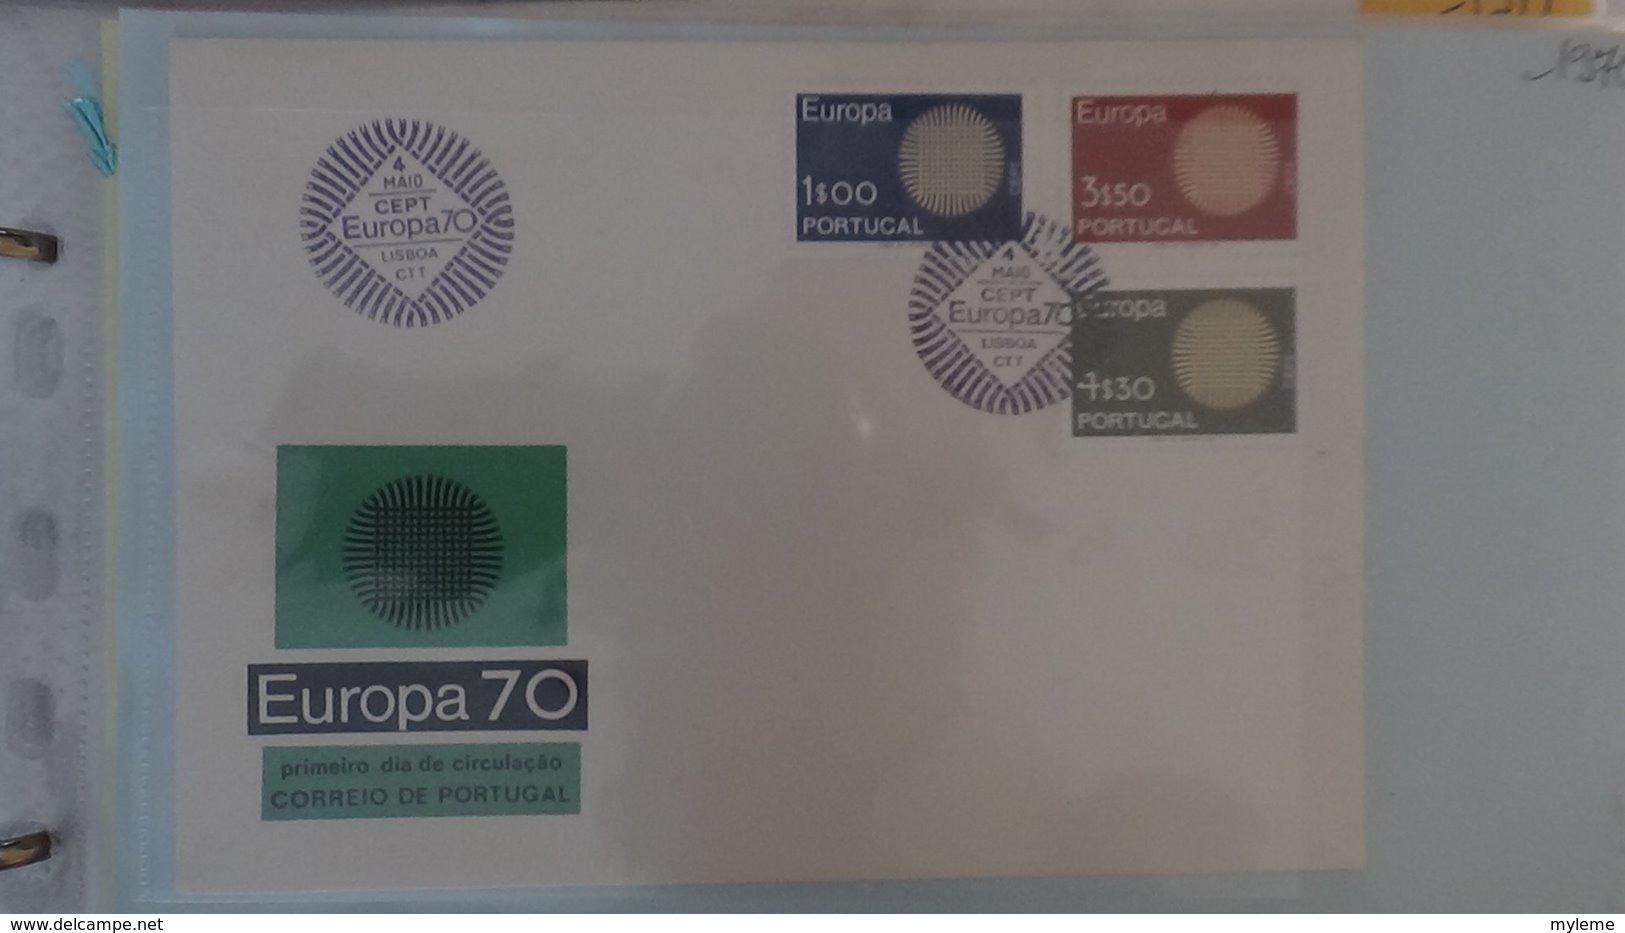 Dispersion d'une collection d'enveloppe 1er jour et autres dont 98 EUROPA entre 1978 et 1984